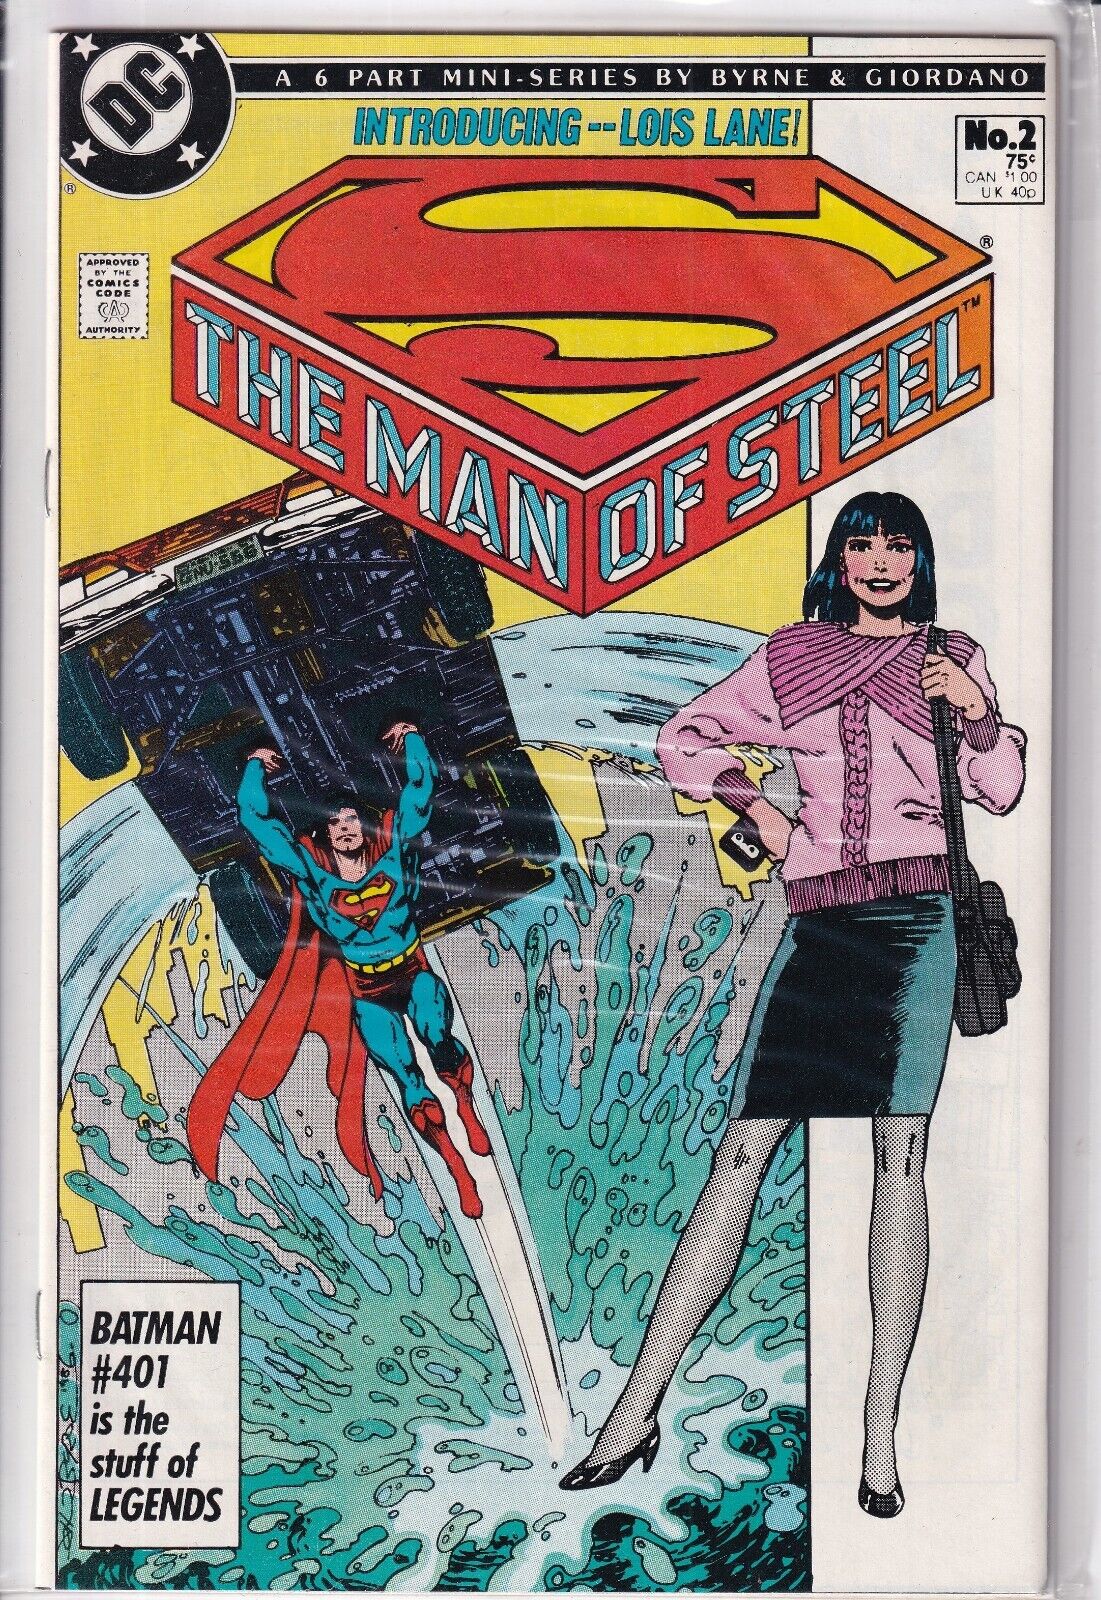 37555: DC Comics MAN OF STEEL #2 NM Grade